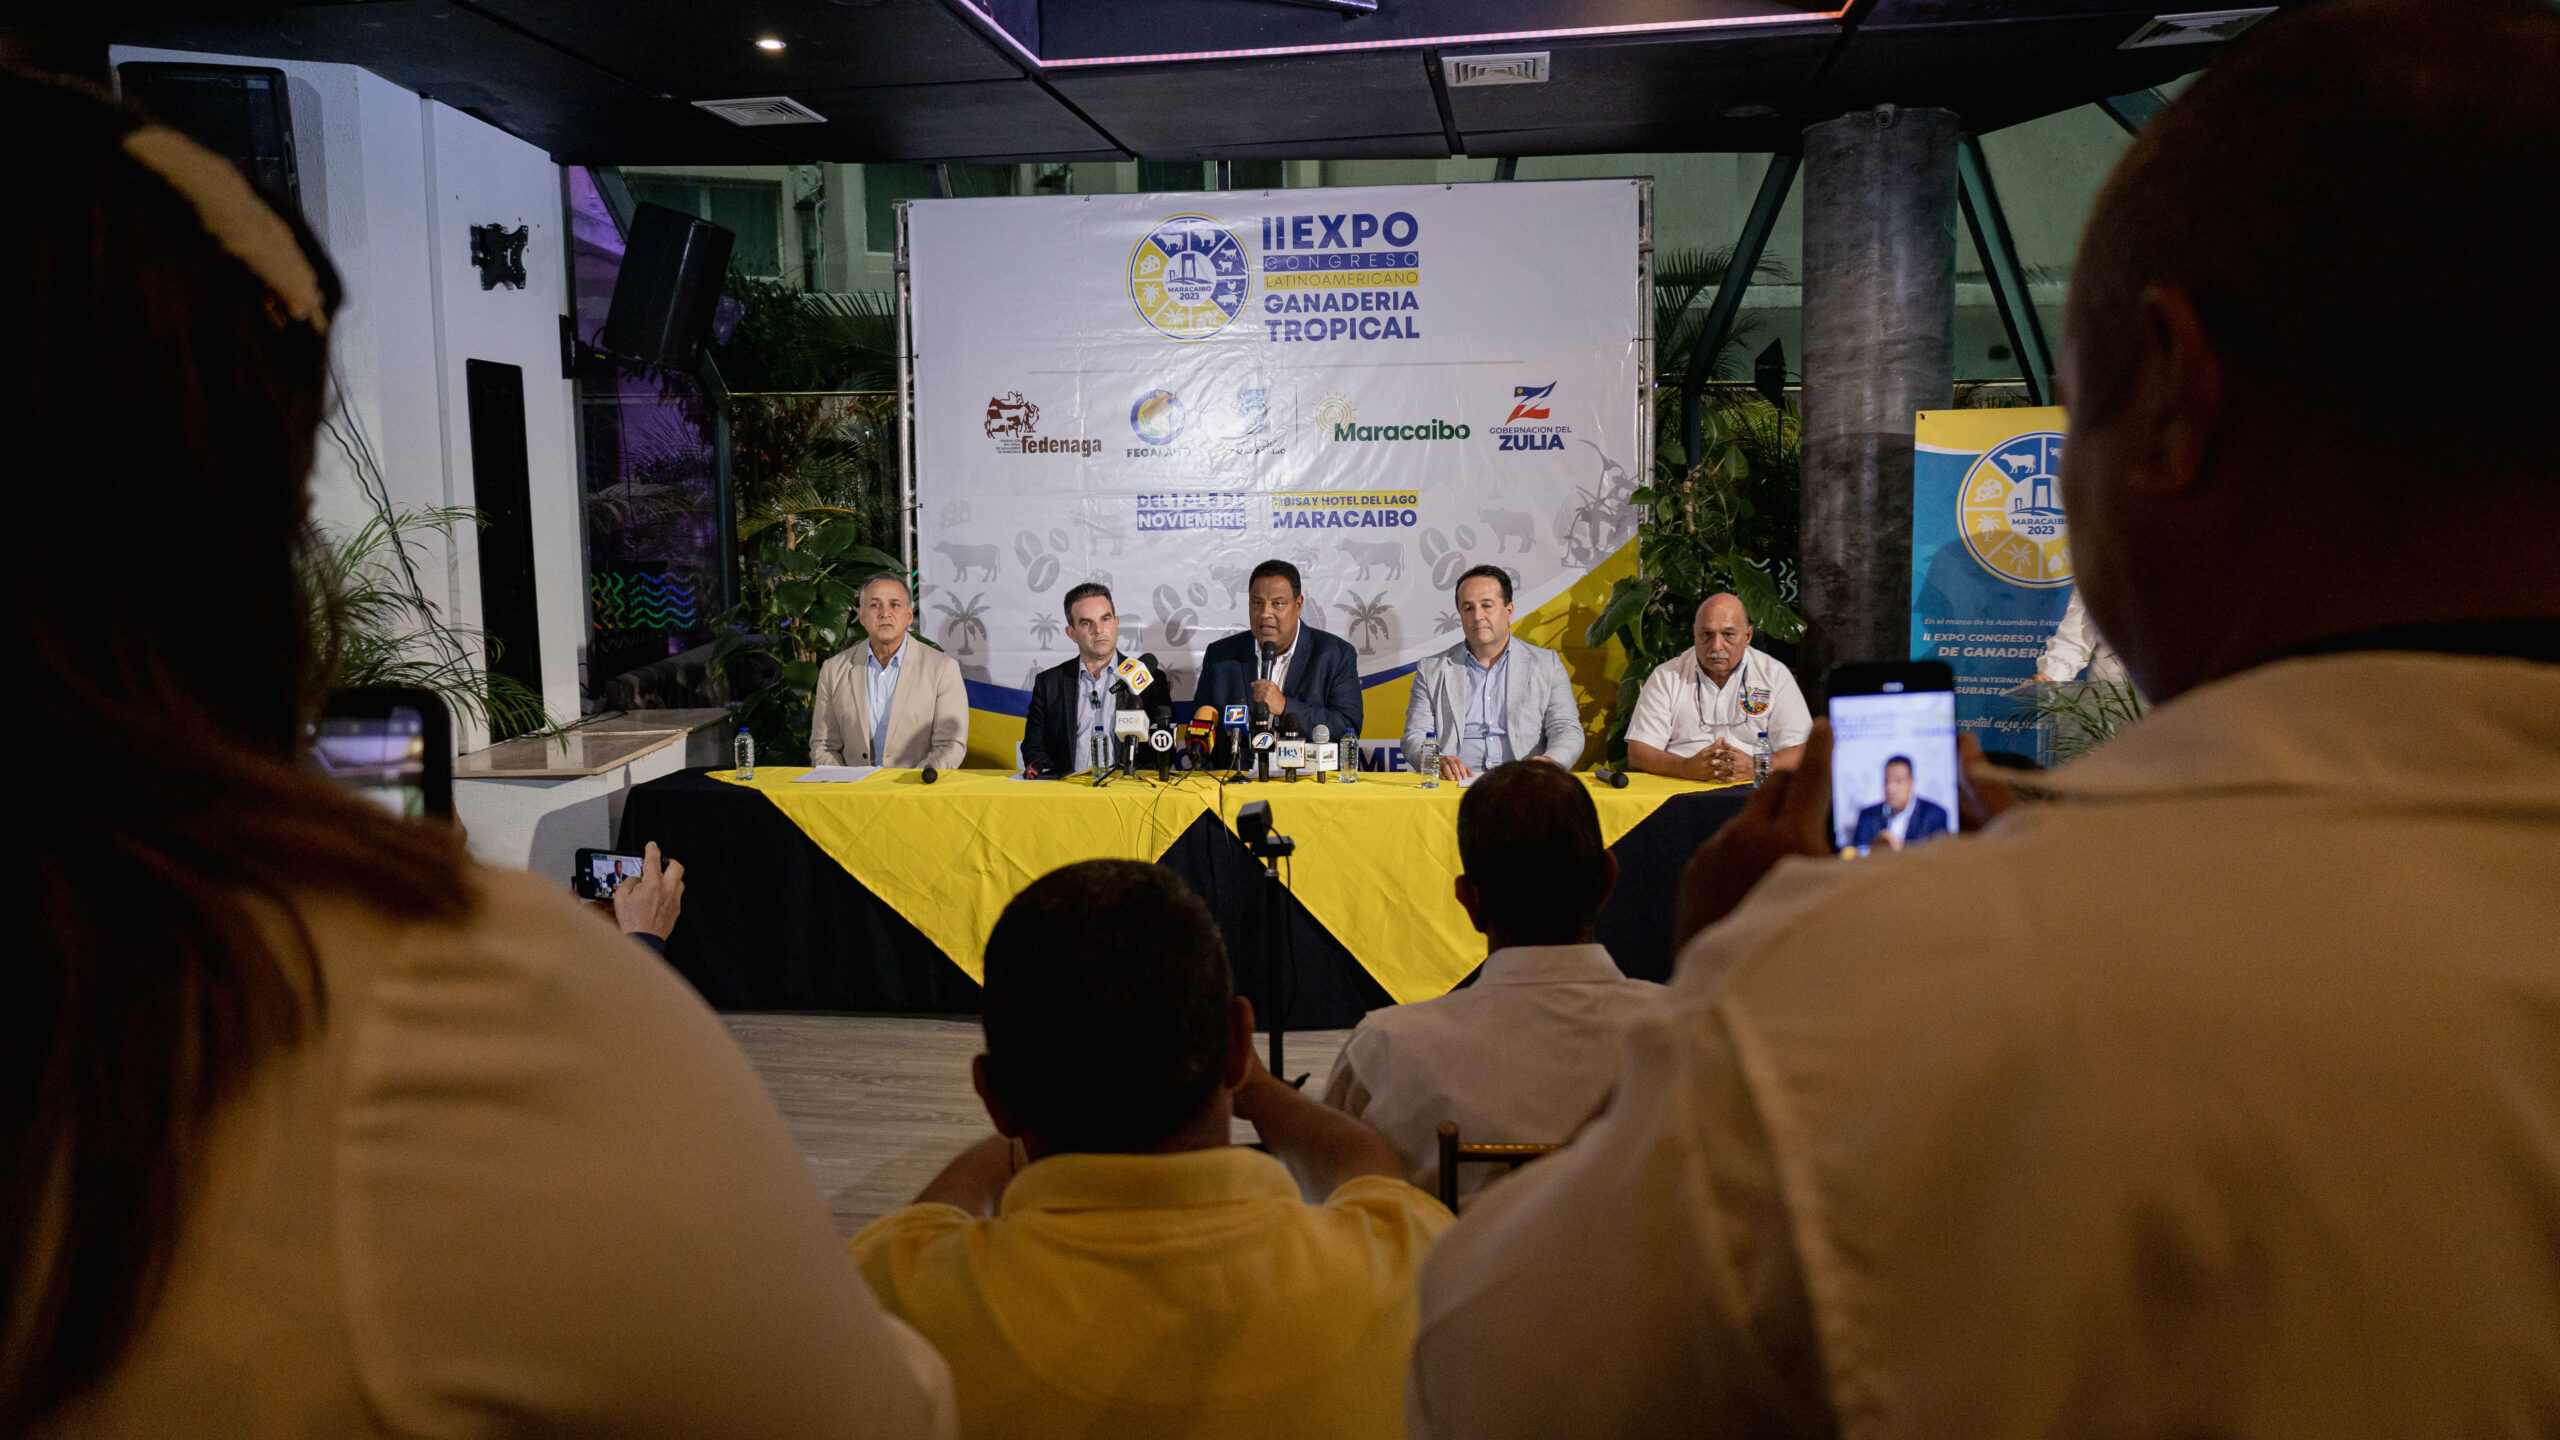 Maracaibo será por segundo año sede del Expo Congreso Latinoamericano de Ganadería Tropical